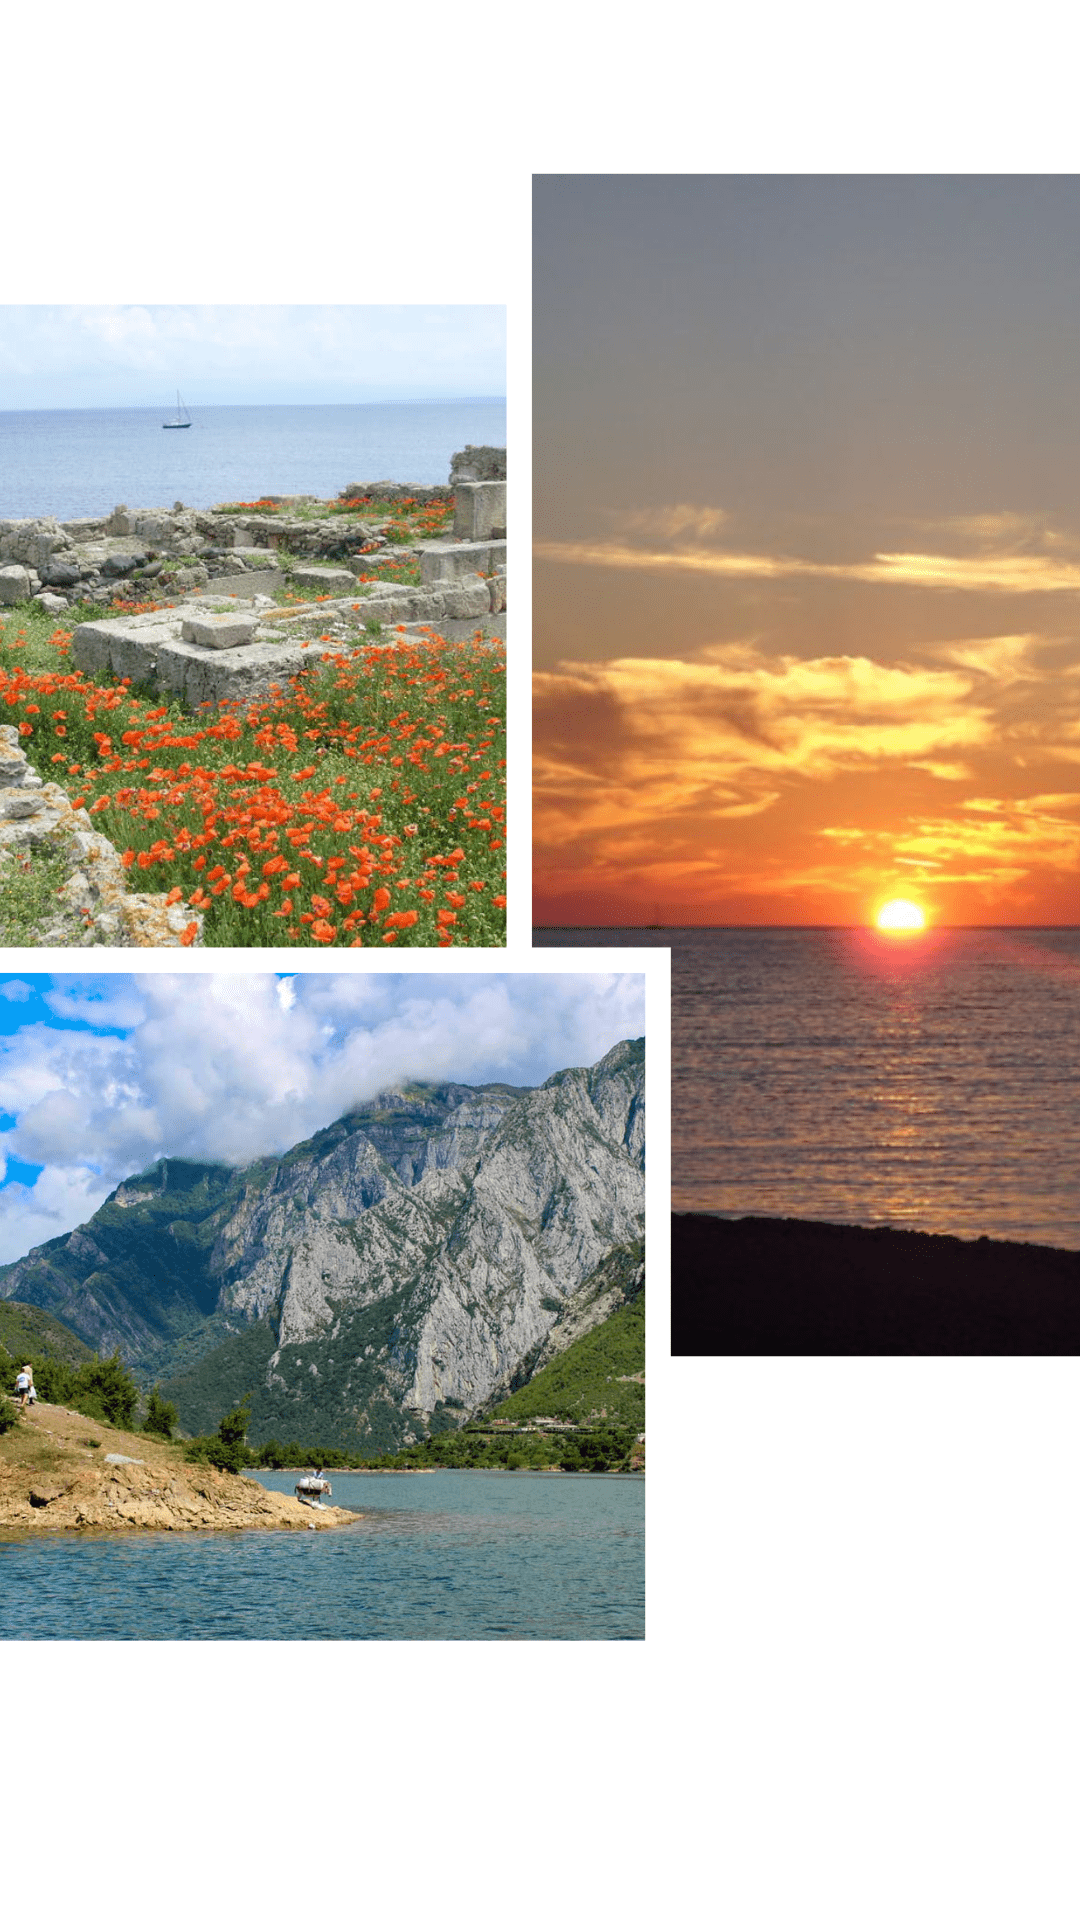 Sardinien, Kroatien, Albanien - sonnige Reiseziele im März